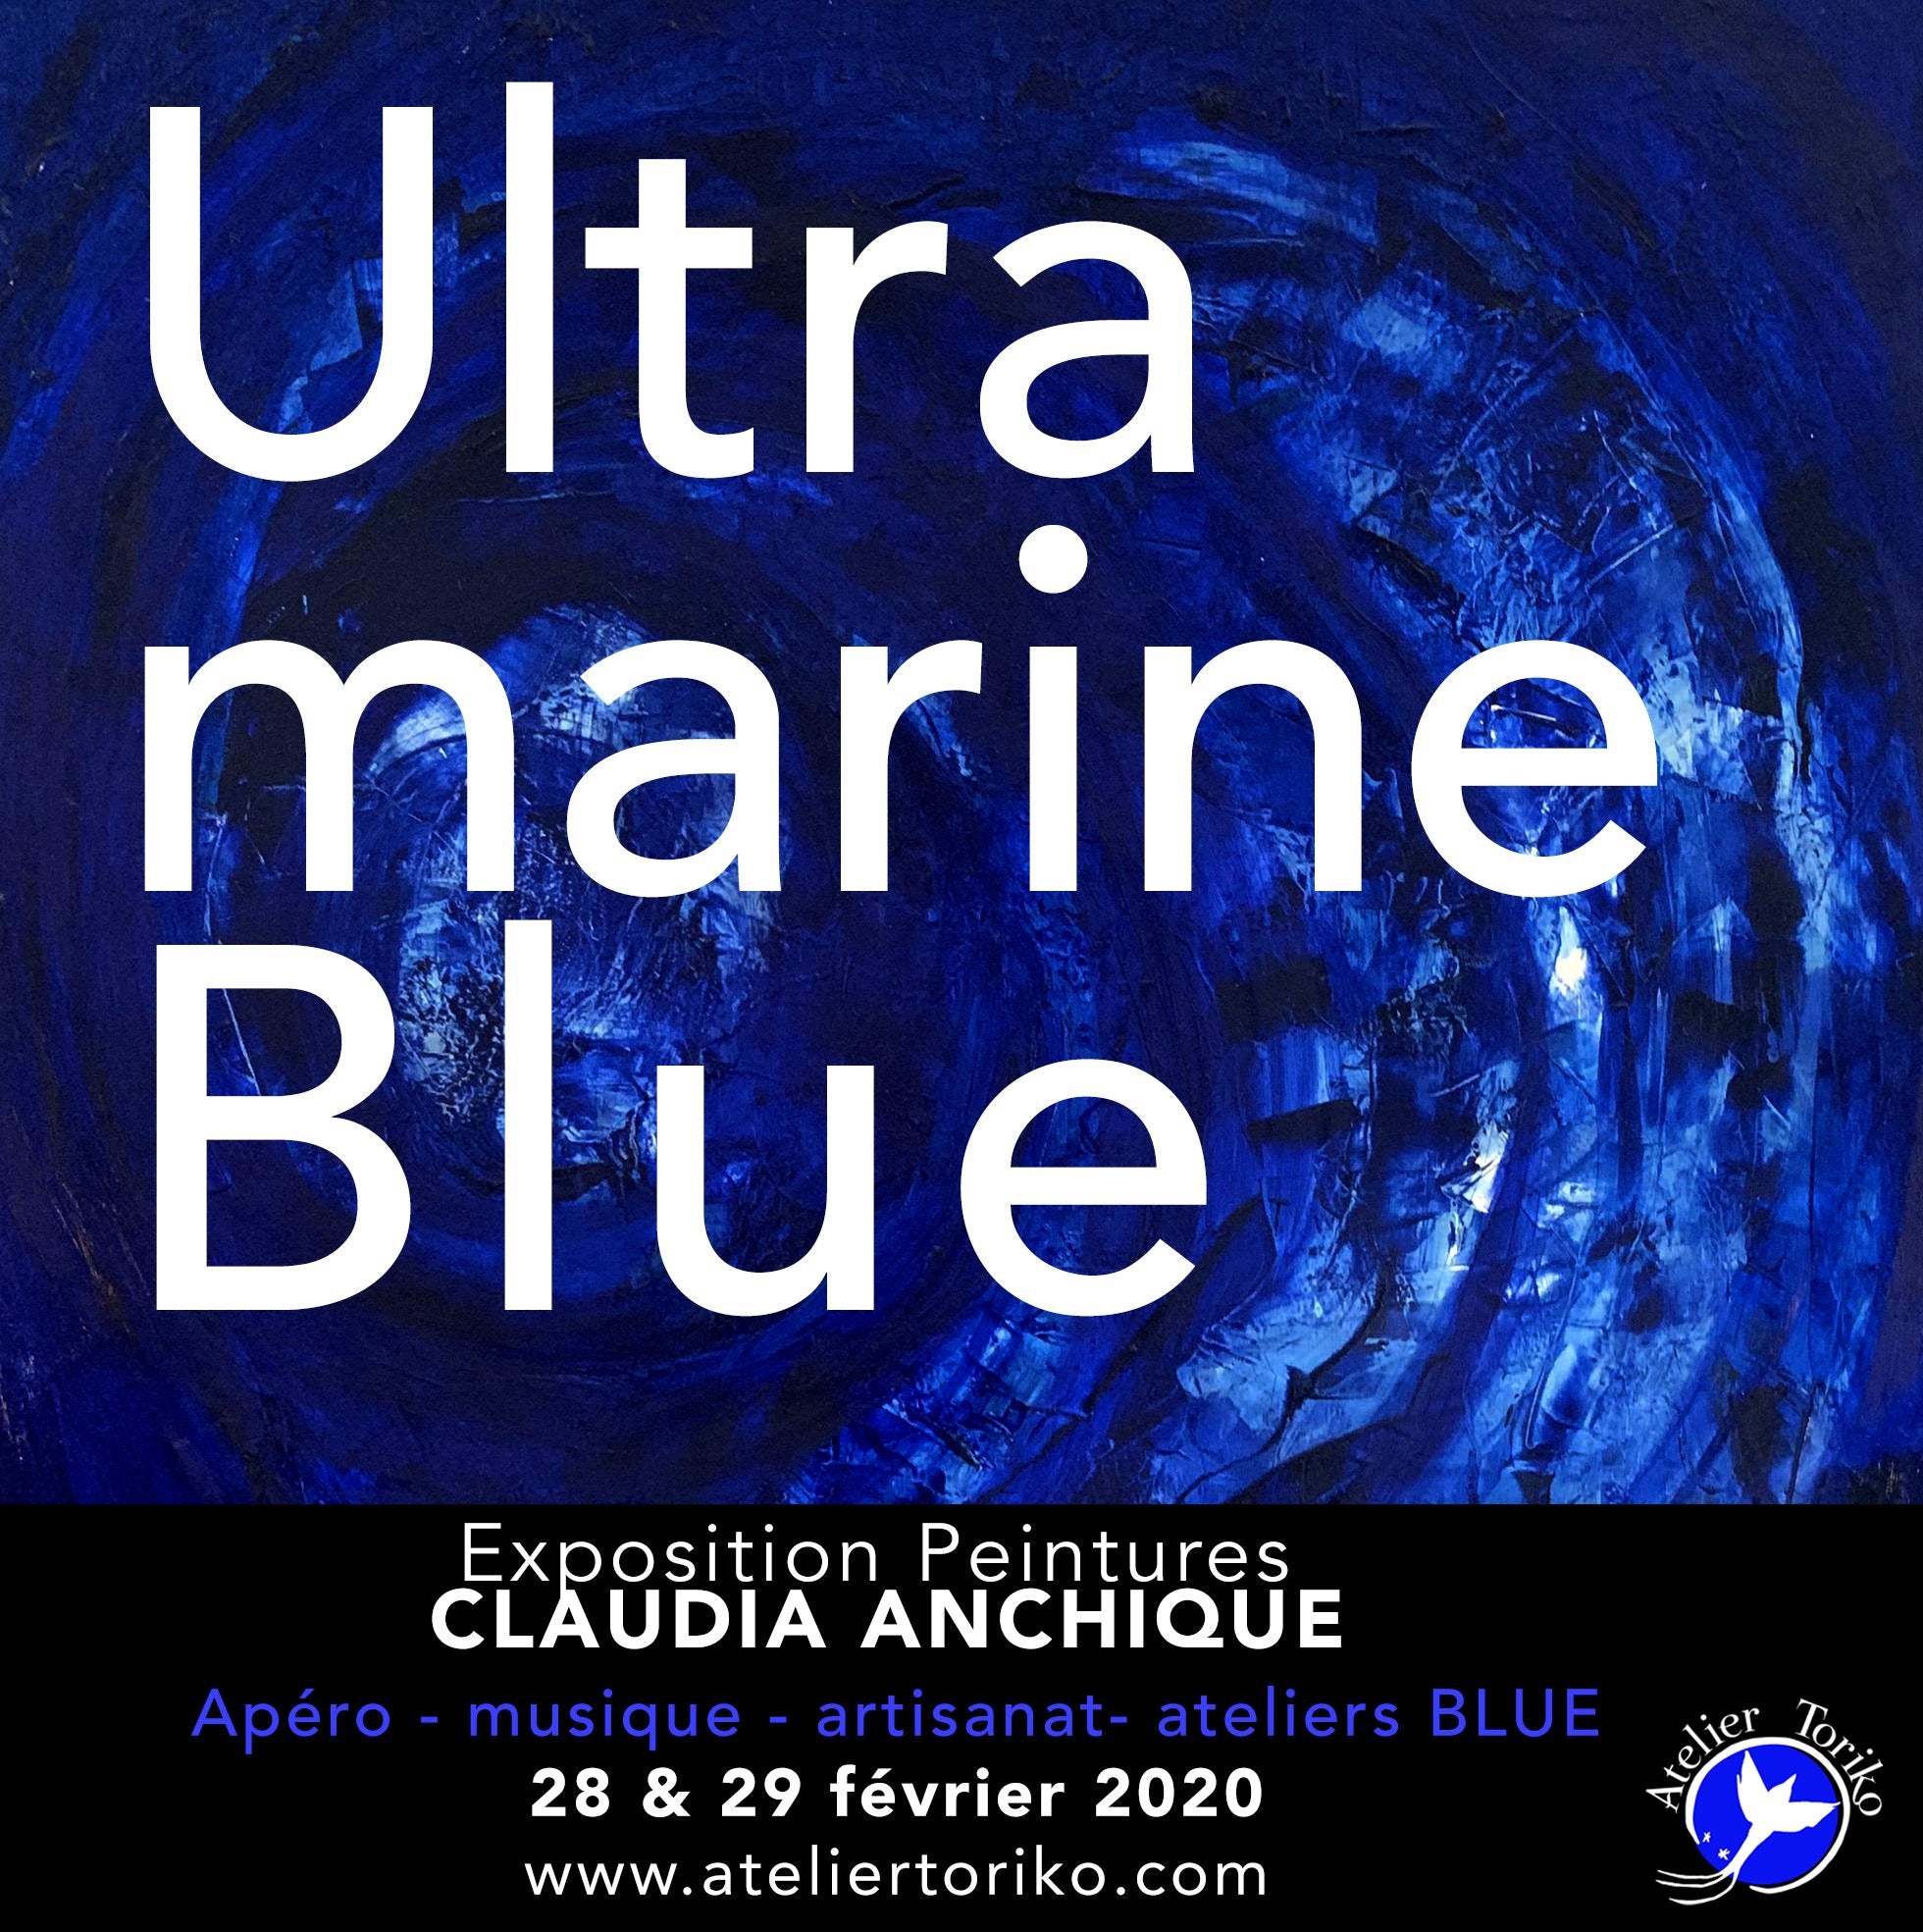 The Blue Collection - La Série bleue-Atelier Toriko